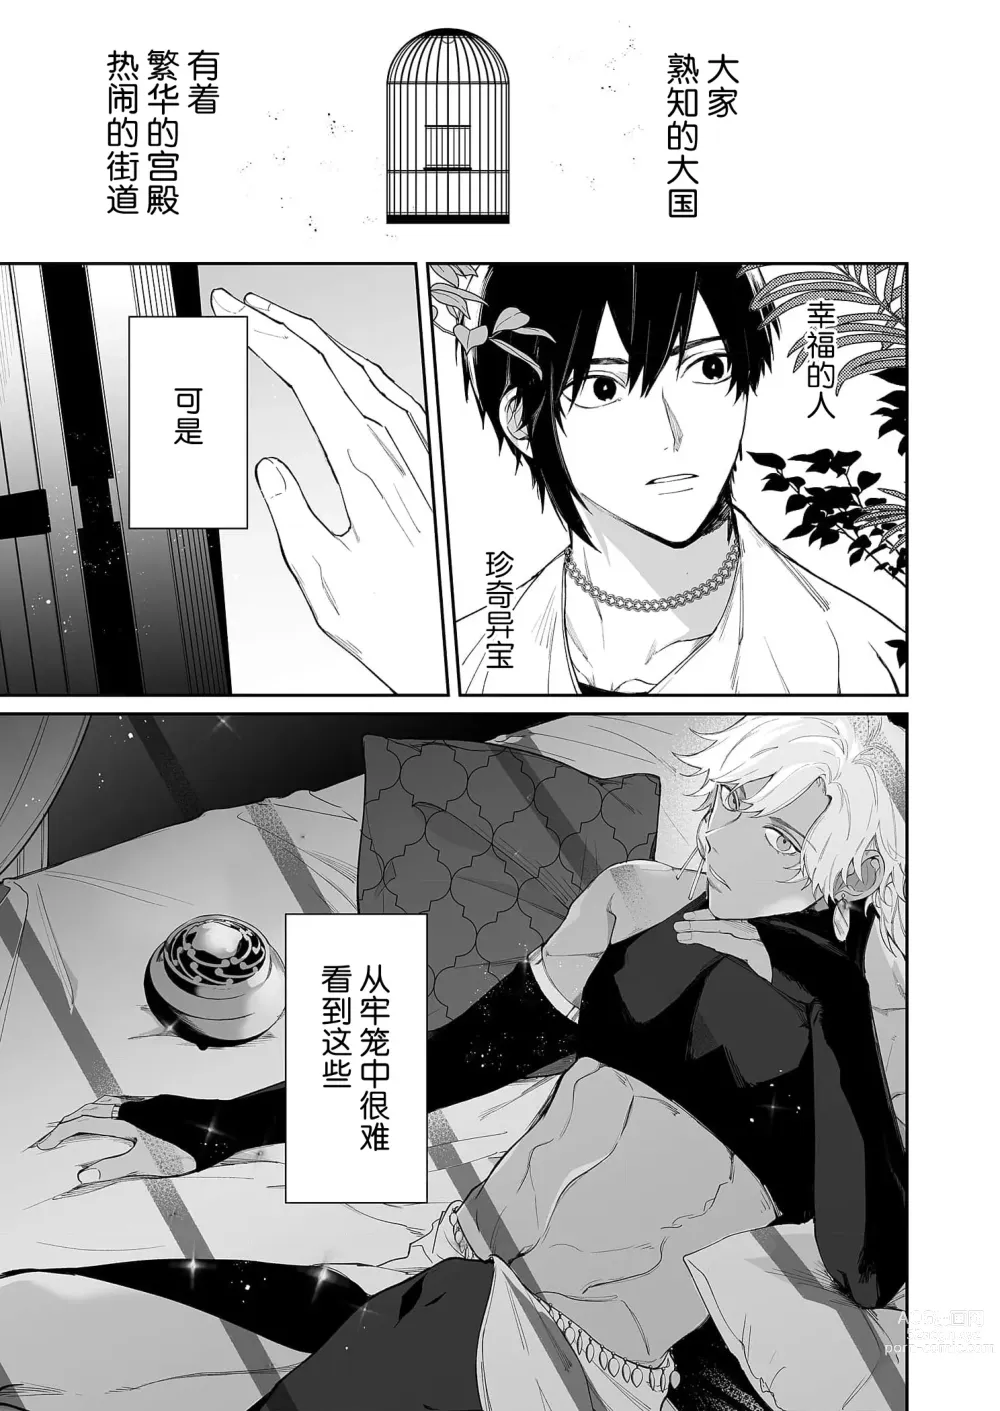 Page 3 of manga 籠獄中的新娘 1-3